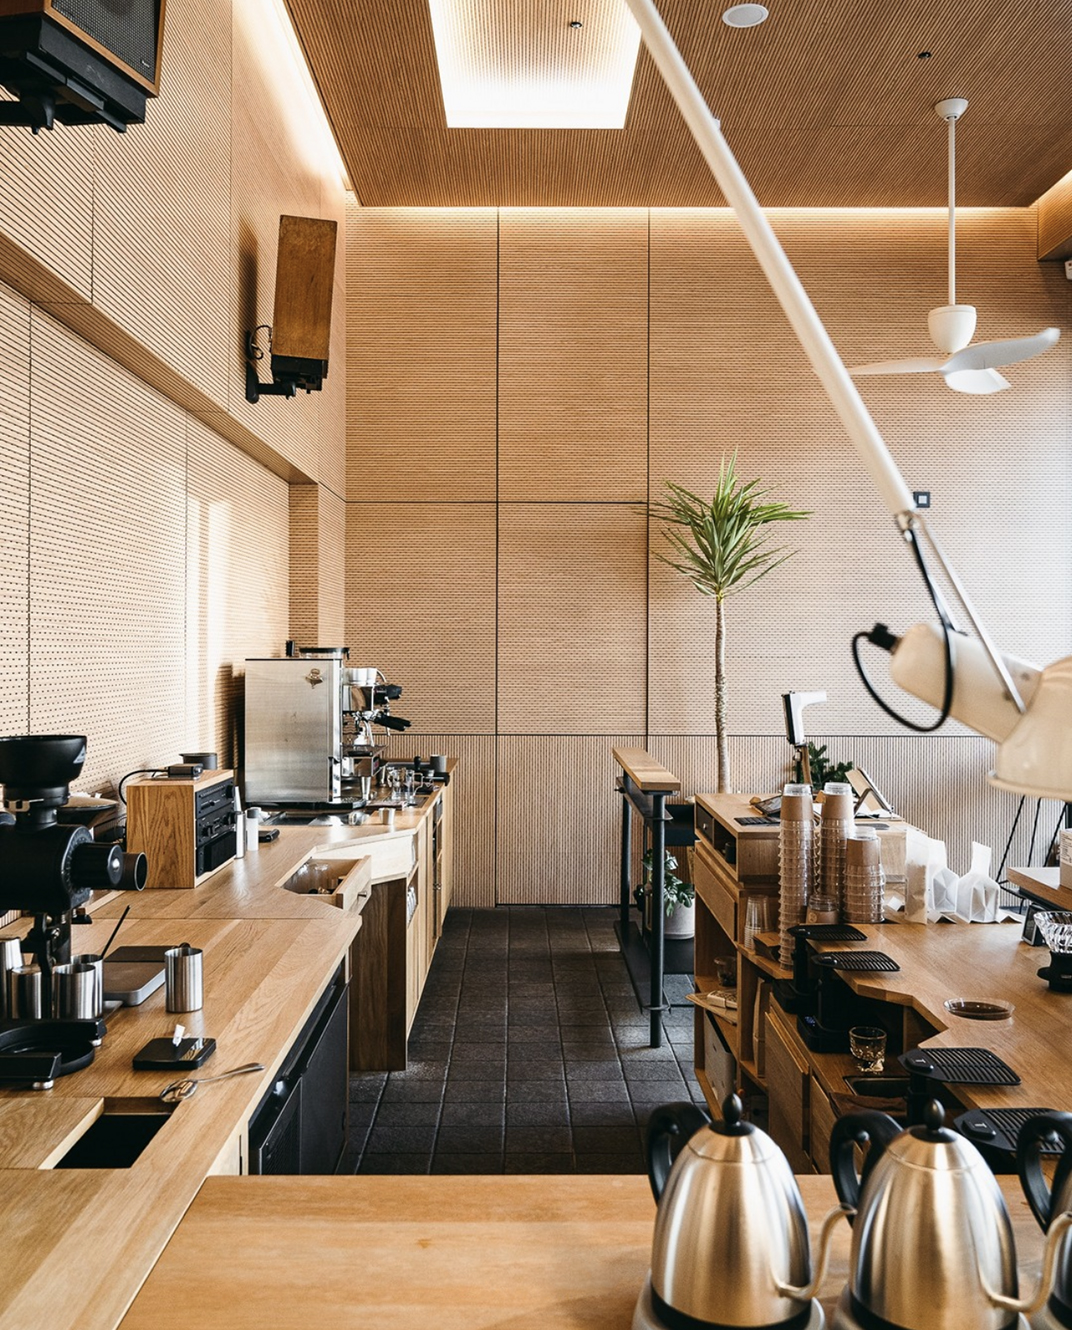 浅木色咖啡馆 带来的清新气息 韩国 釜山 珠海 东莞 上海 北京 广州 武汉 咖啡店 餐饮商业 logo设计 vi设计 空间设计